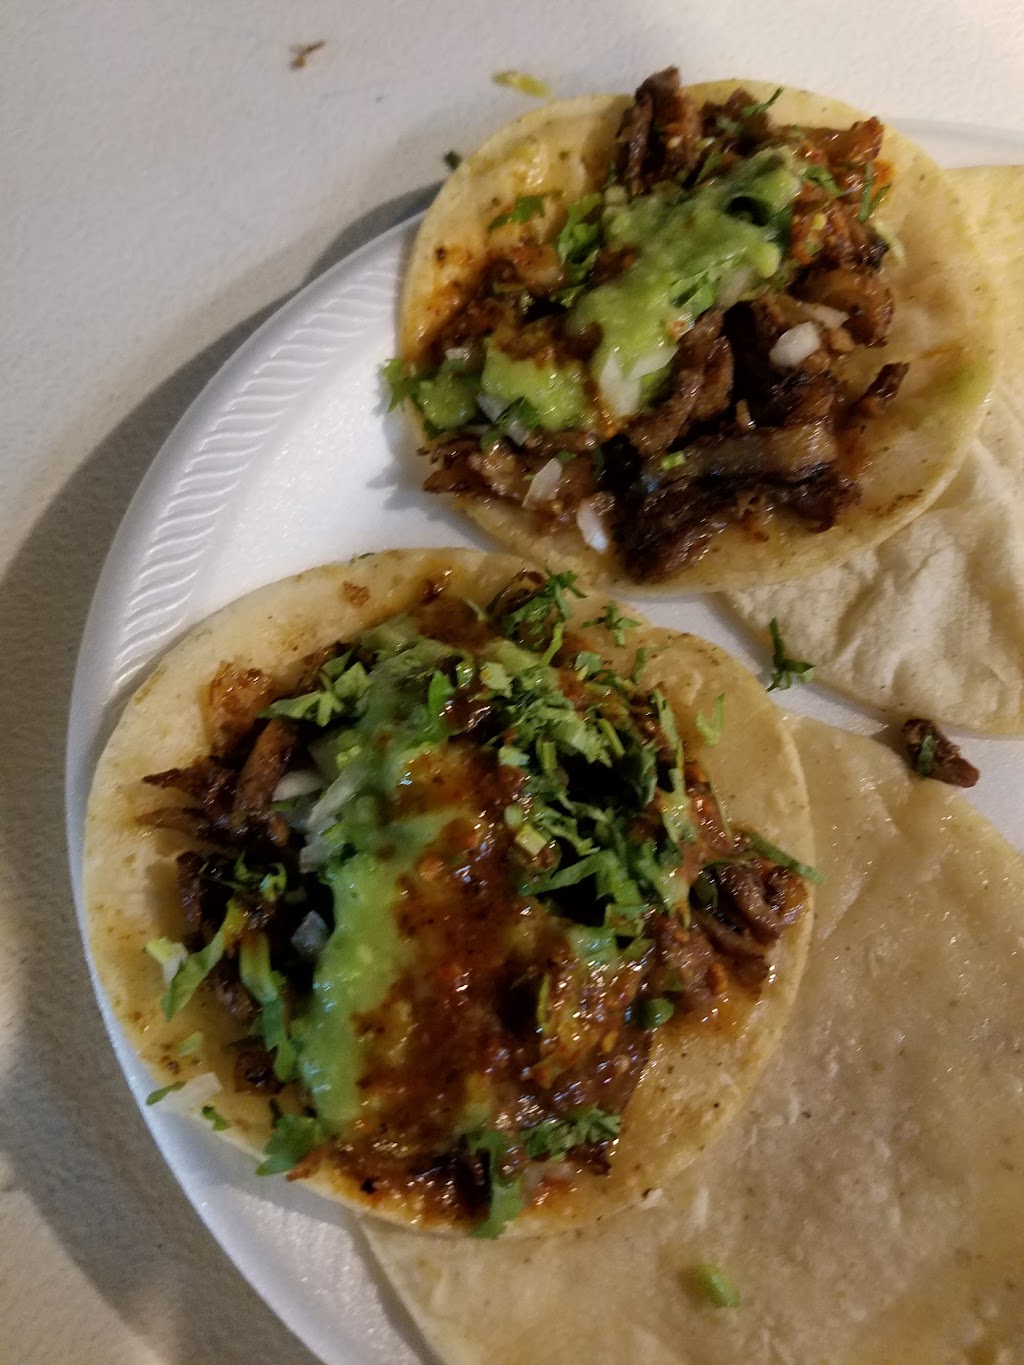 Tacos Los Tapatios | 959 N Susan St, Santa Ana, CA 92703 | Phone: (714) 740-9887